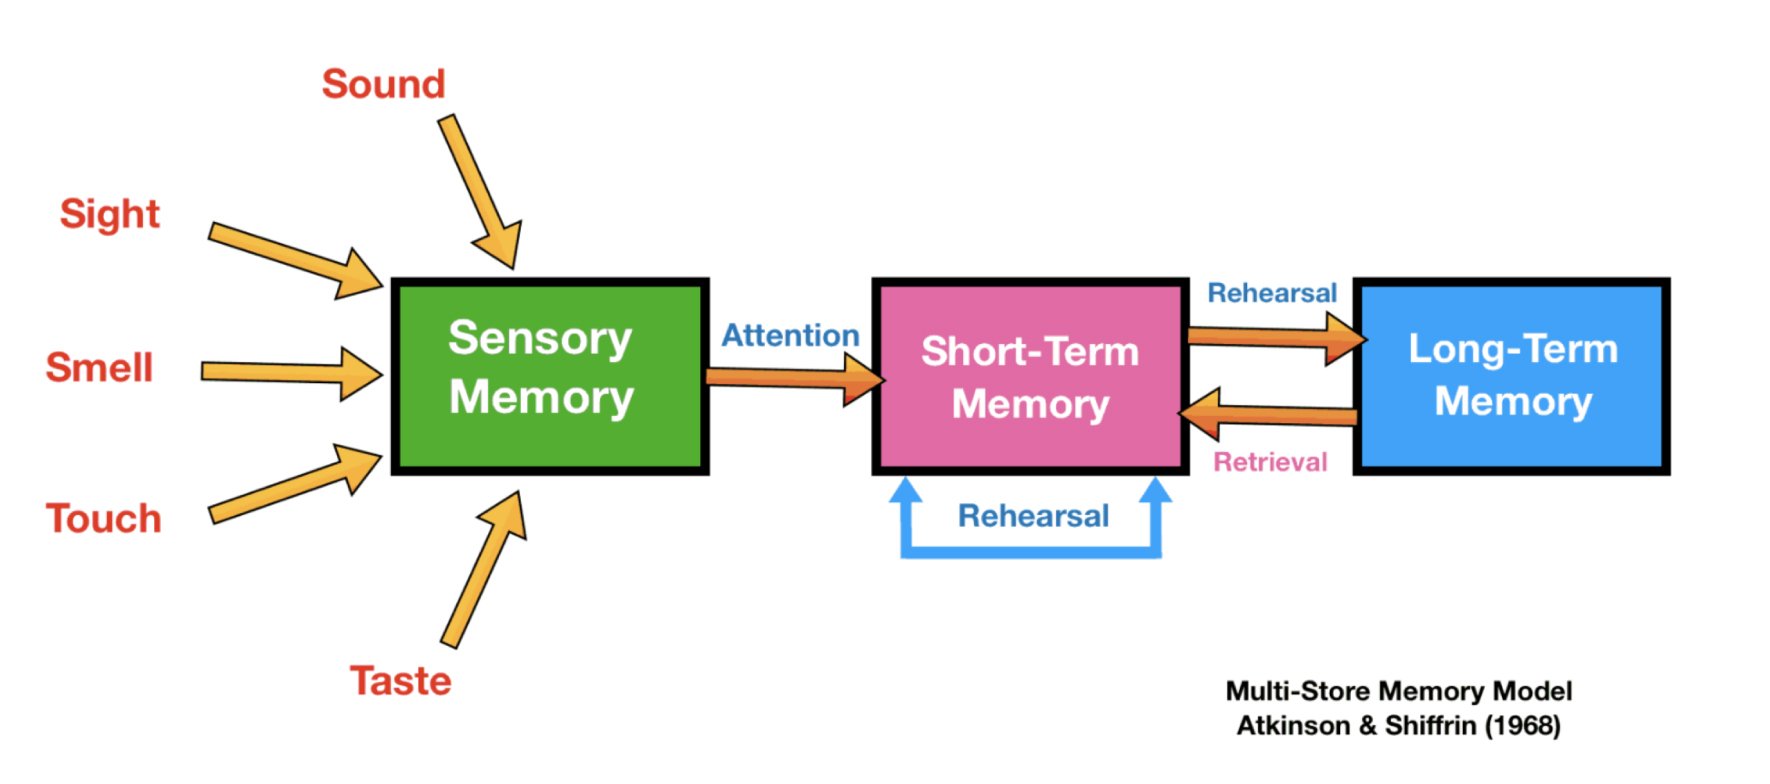 multi-store model of memory